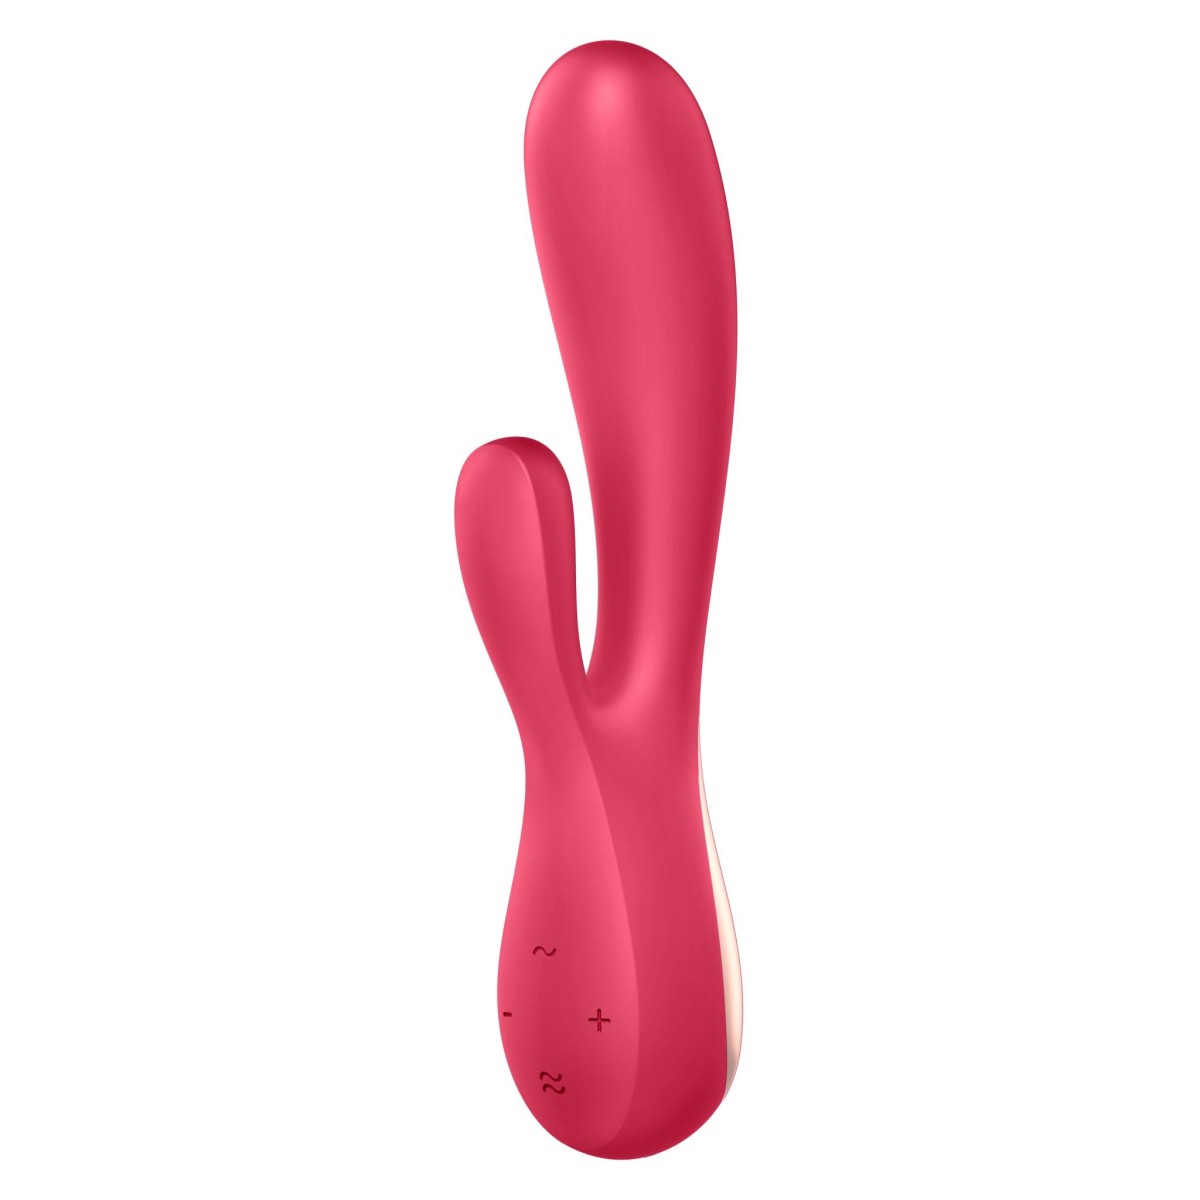 Silikonový vibrátor Satisfyer Mono Flex červený, chytrý ohebný vibrátor na G-bod a klitoris 19,6 x 3,5 cm